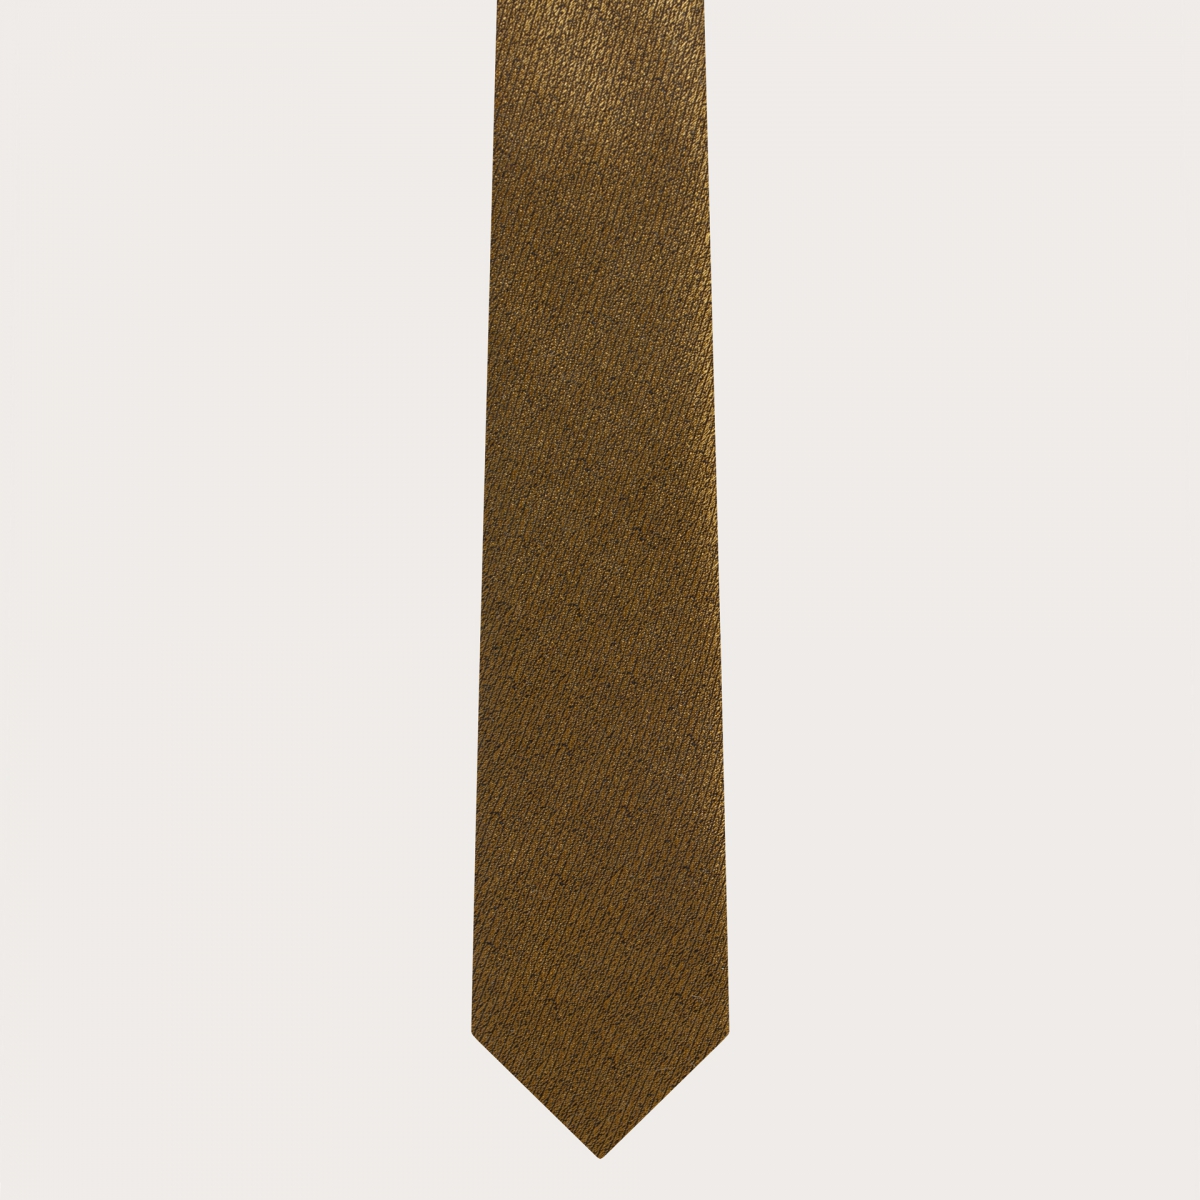 BRUCLE Cravate slim élégante en soie jacquard or irisé